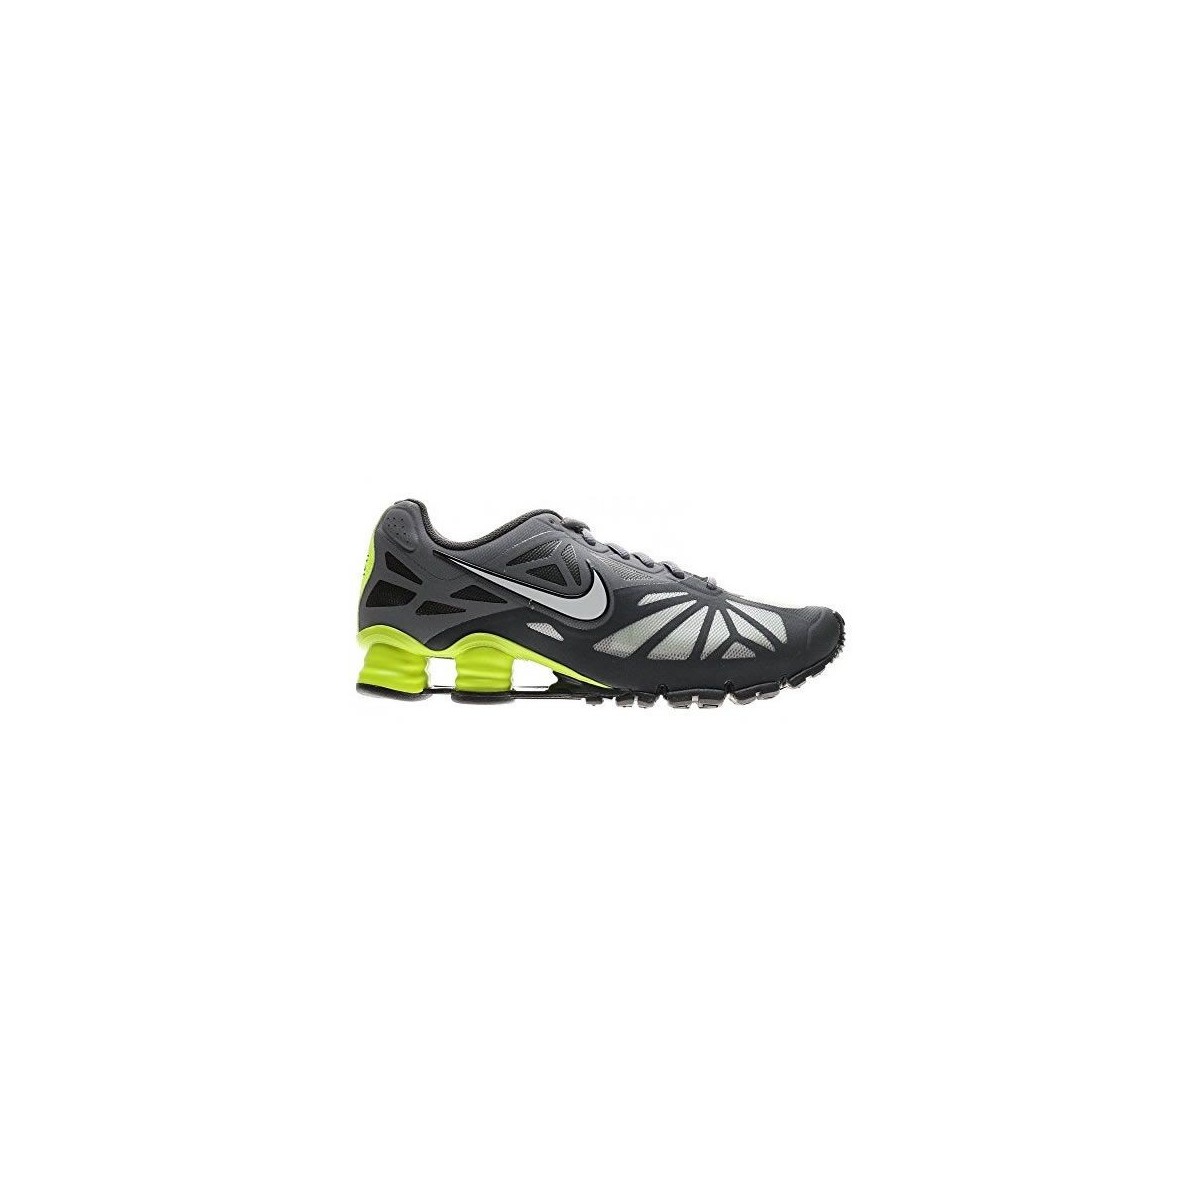 Organo evolución Gama de Shoes Nike Shox Turbo 14 631760 007